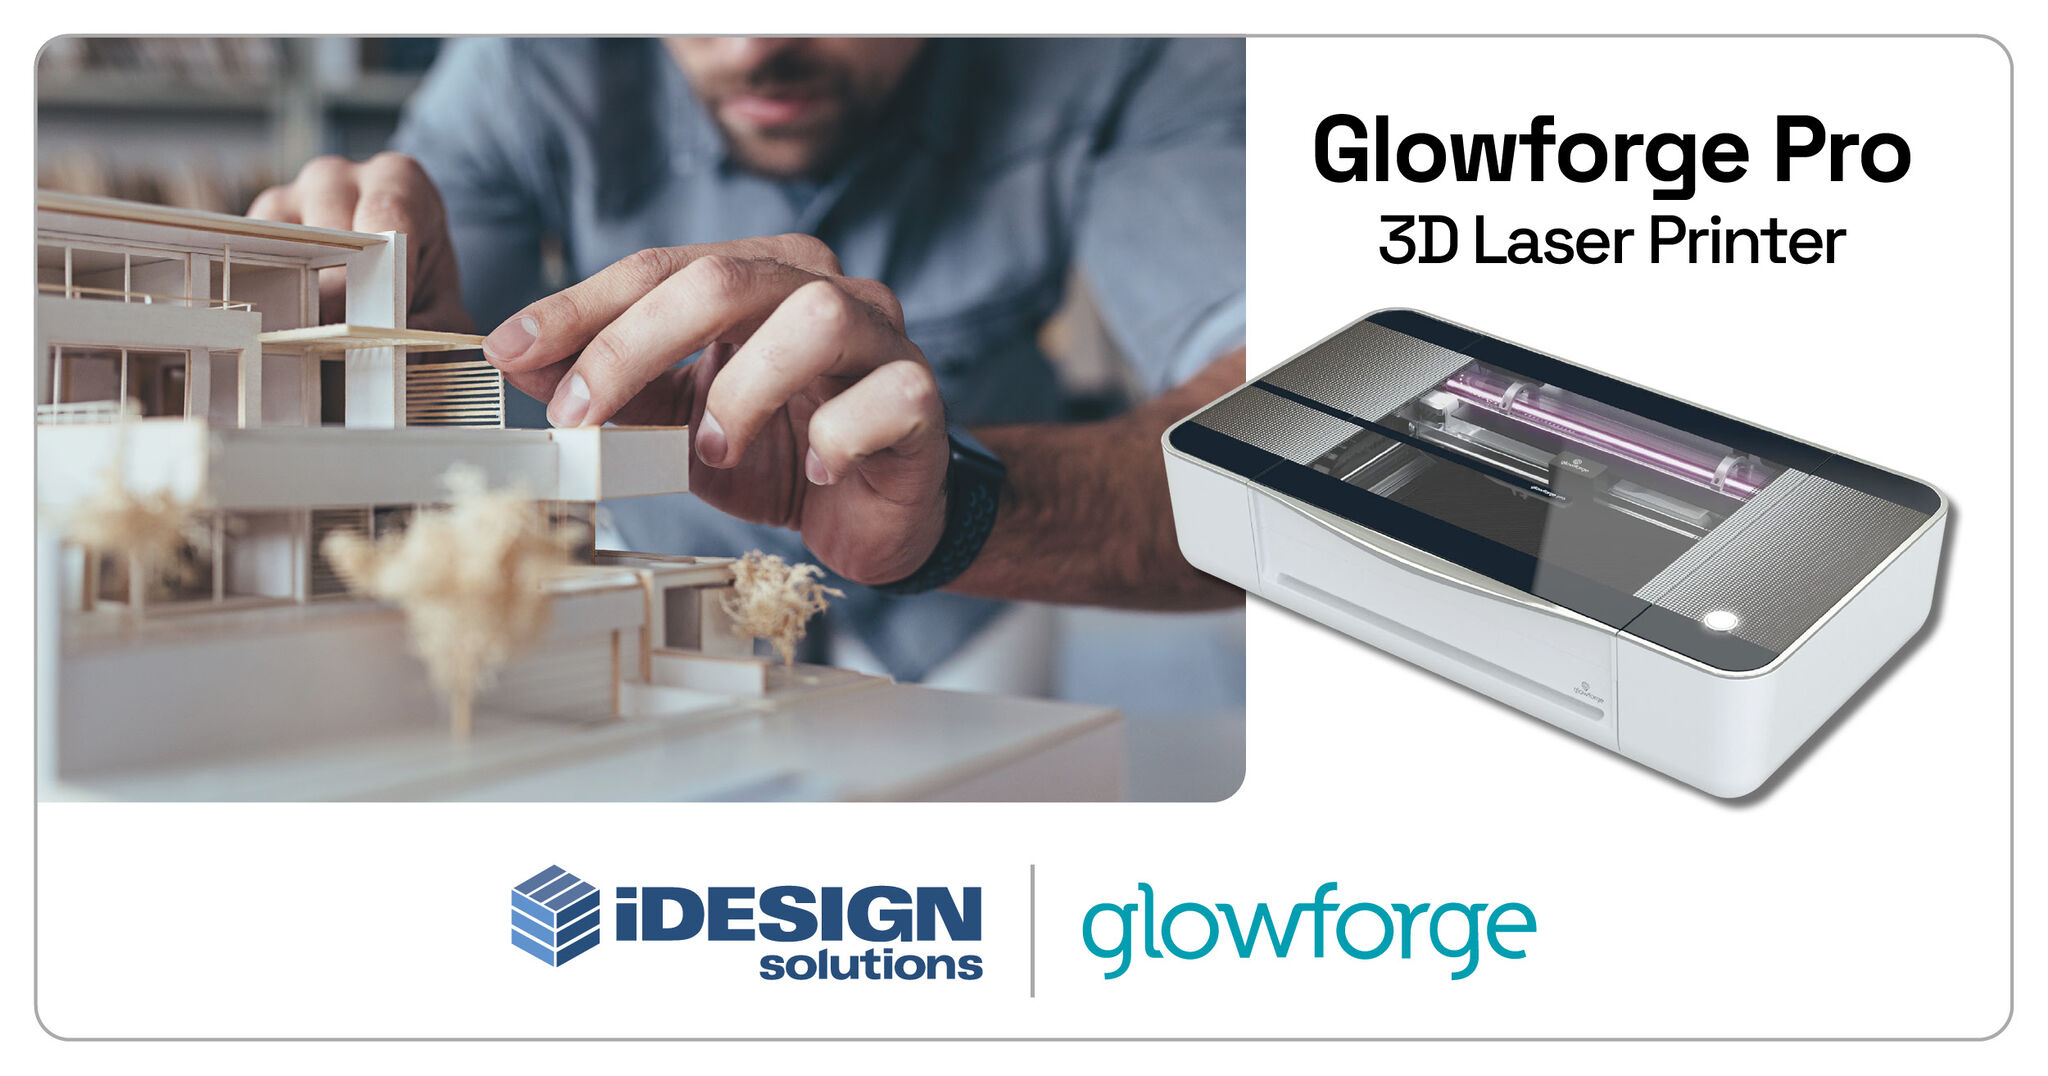 Glowforge Pro 3D Laser Printer